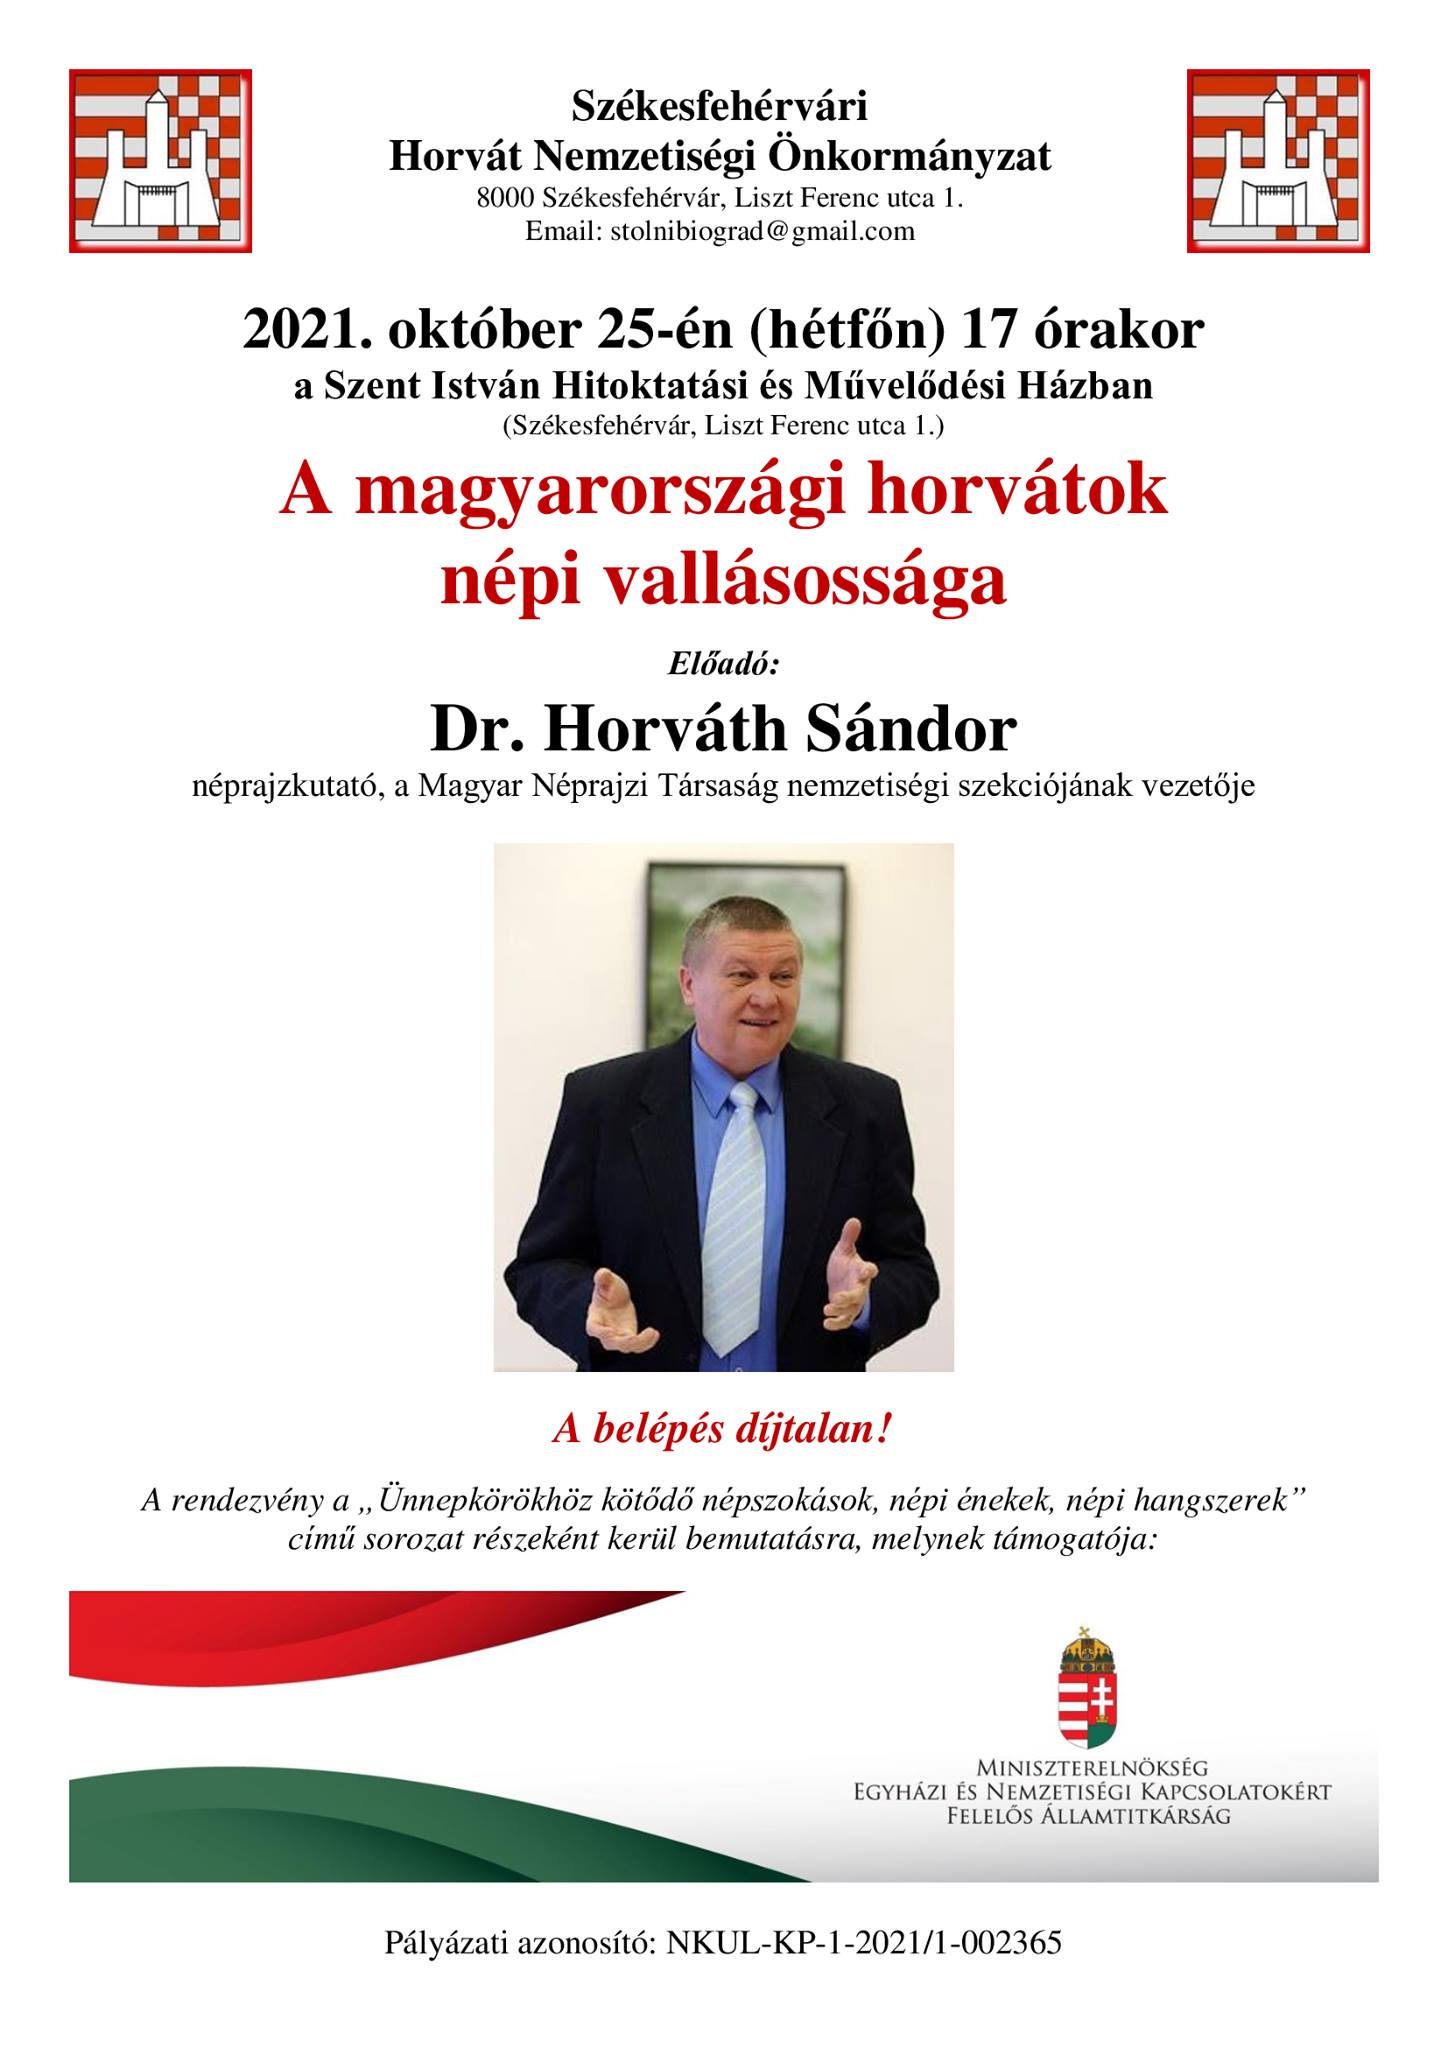 Érdekes tudományos előadások horvát népcsoportokról és vallásosságról